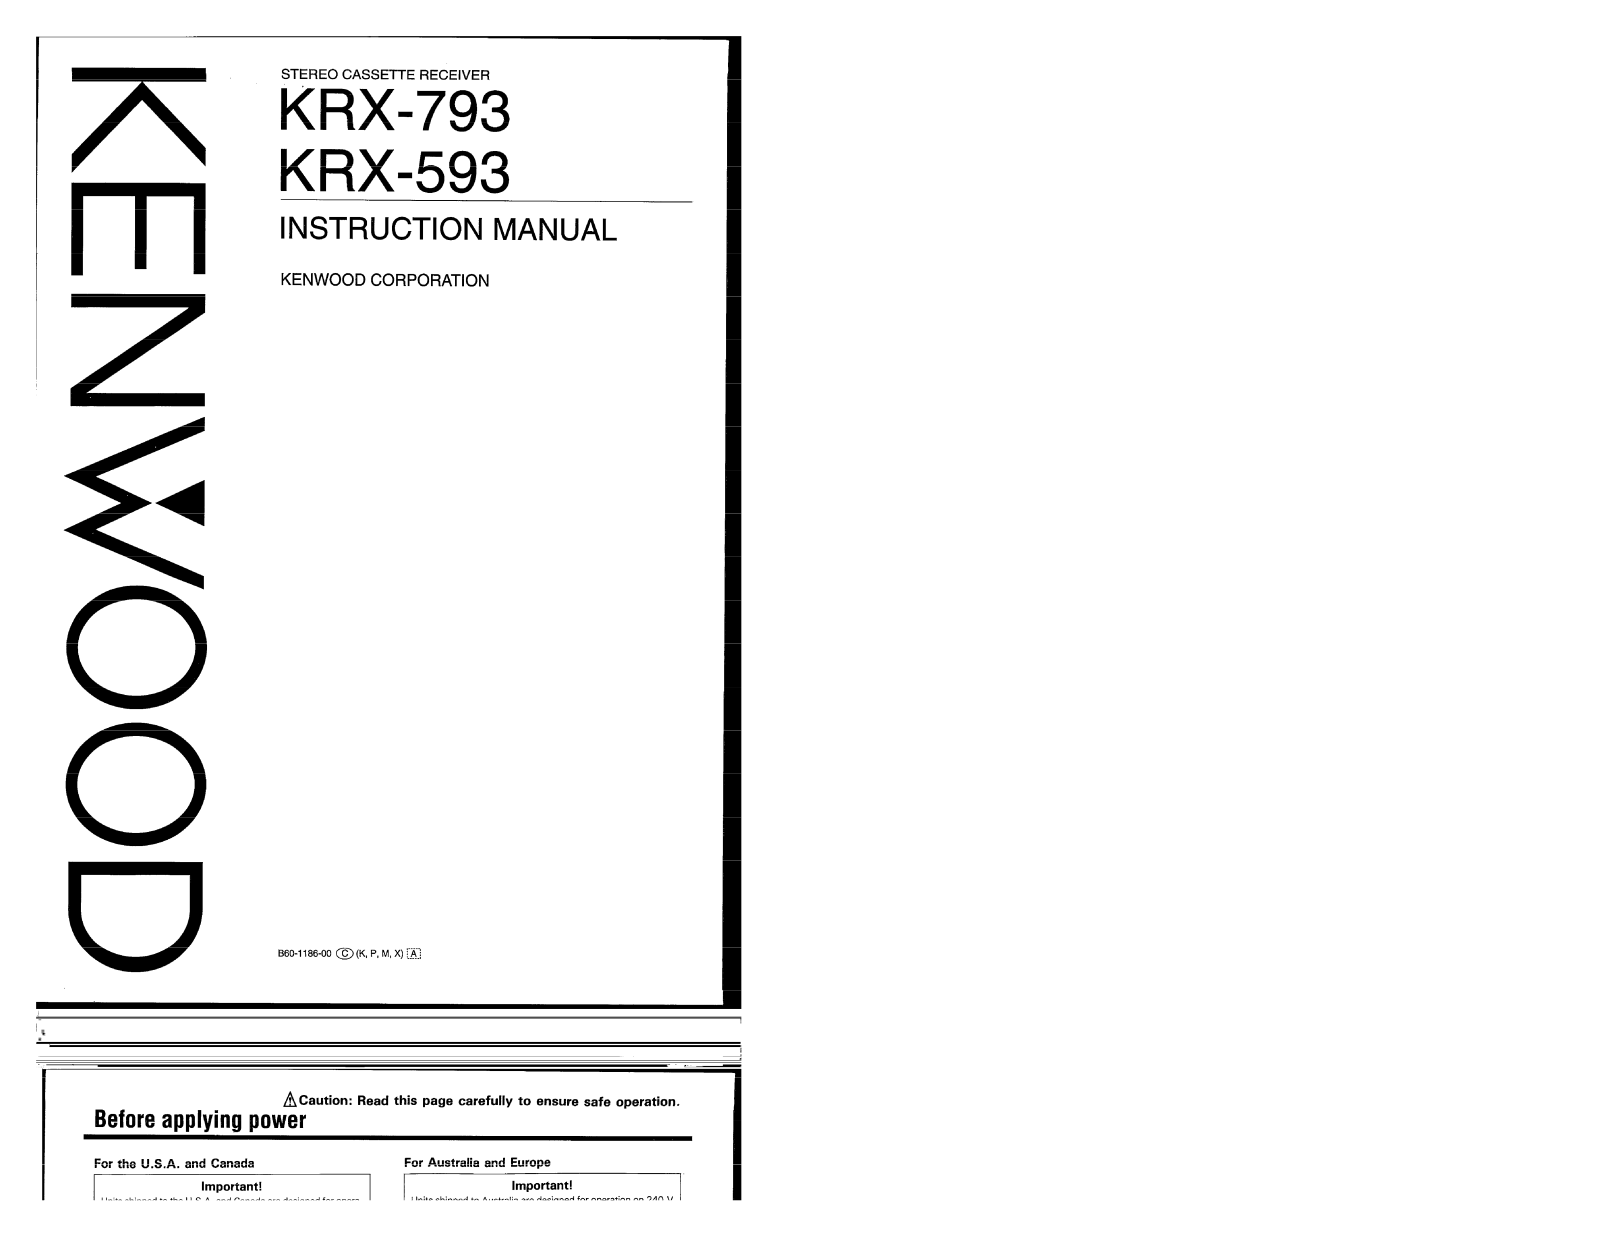 Kenwood KRX-793, KRX-593 Owner's Manual